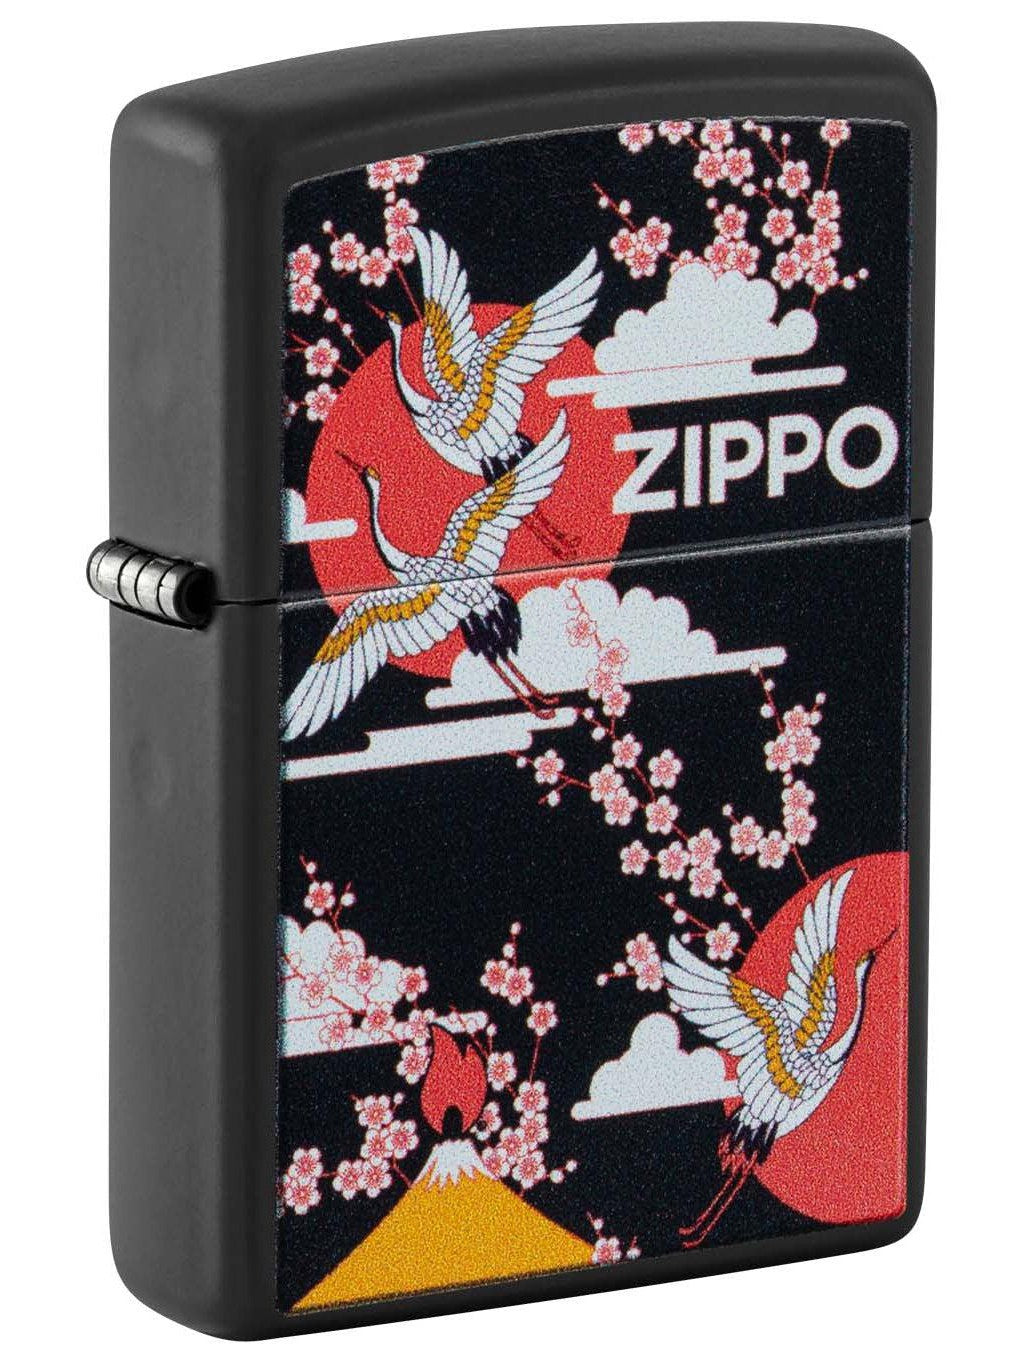 Zippo Lighter: Asian Artwork - Black Matte 48182